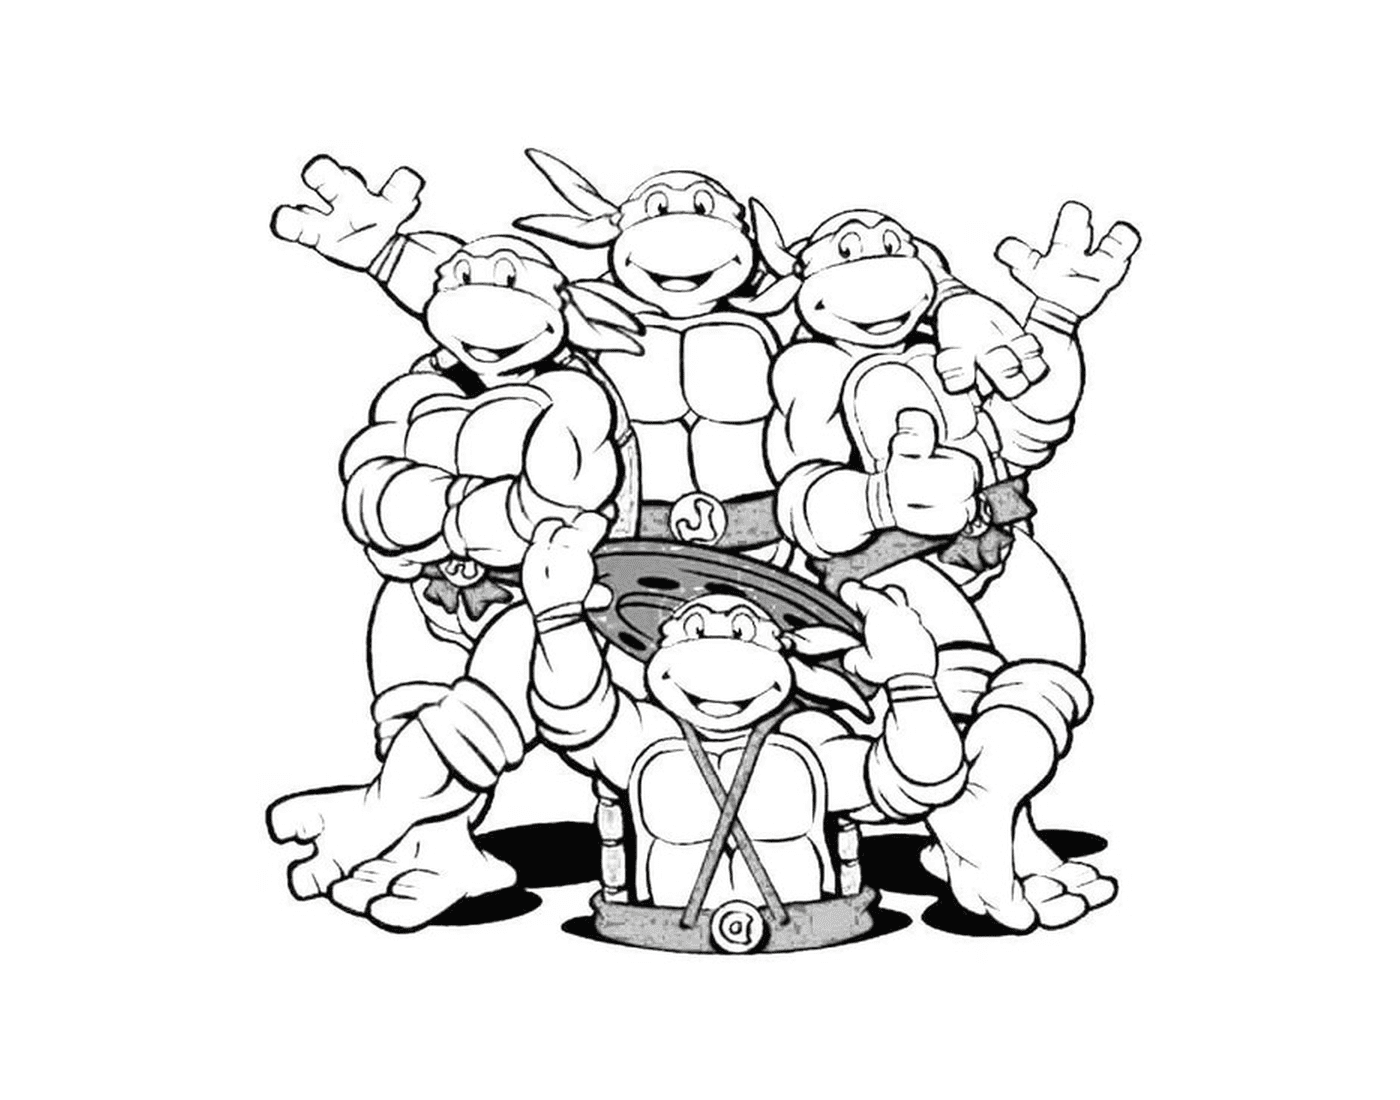  Fantastisches Team von Ninja Schildkröten 